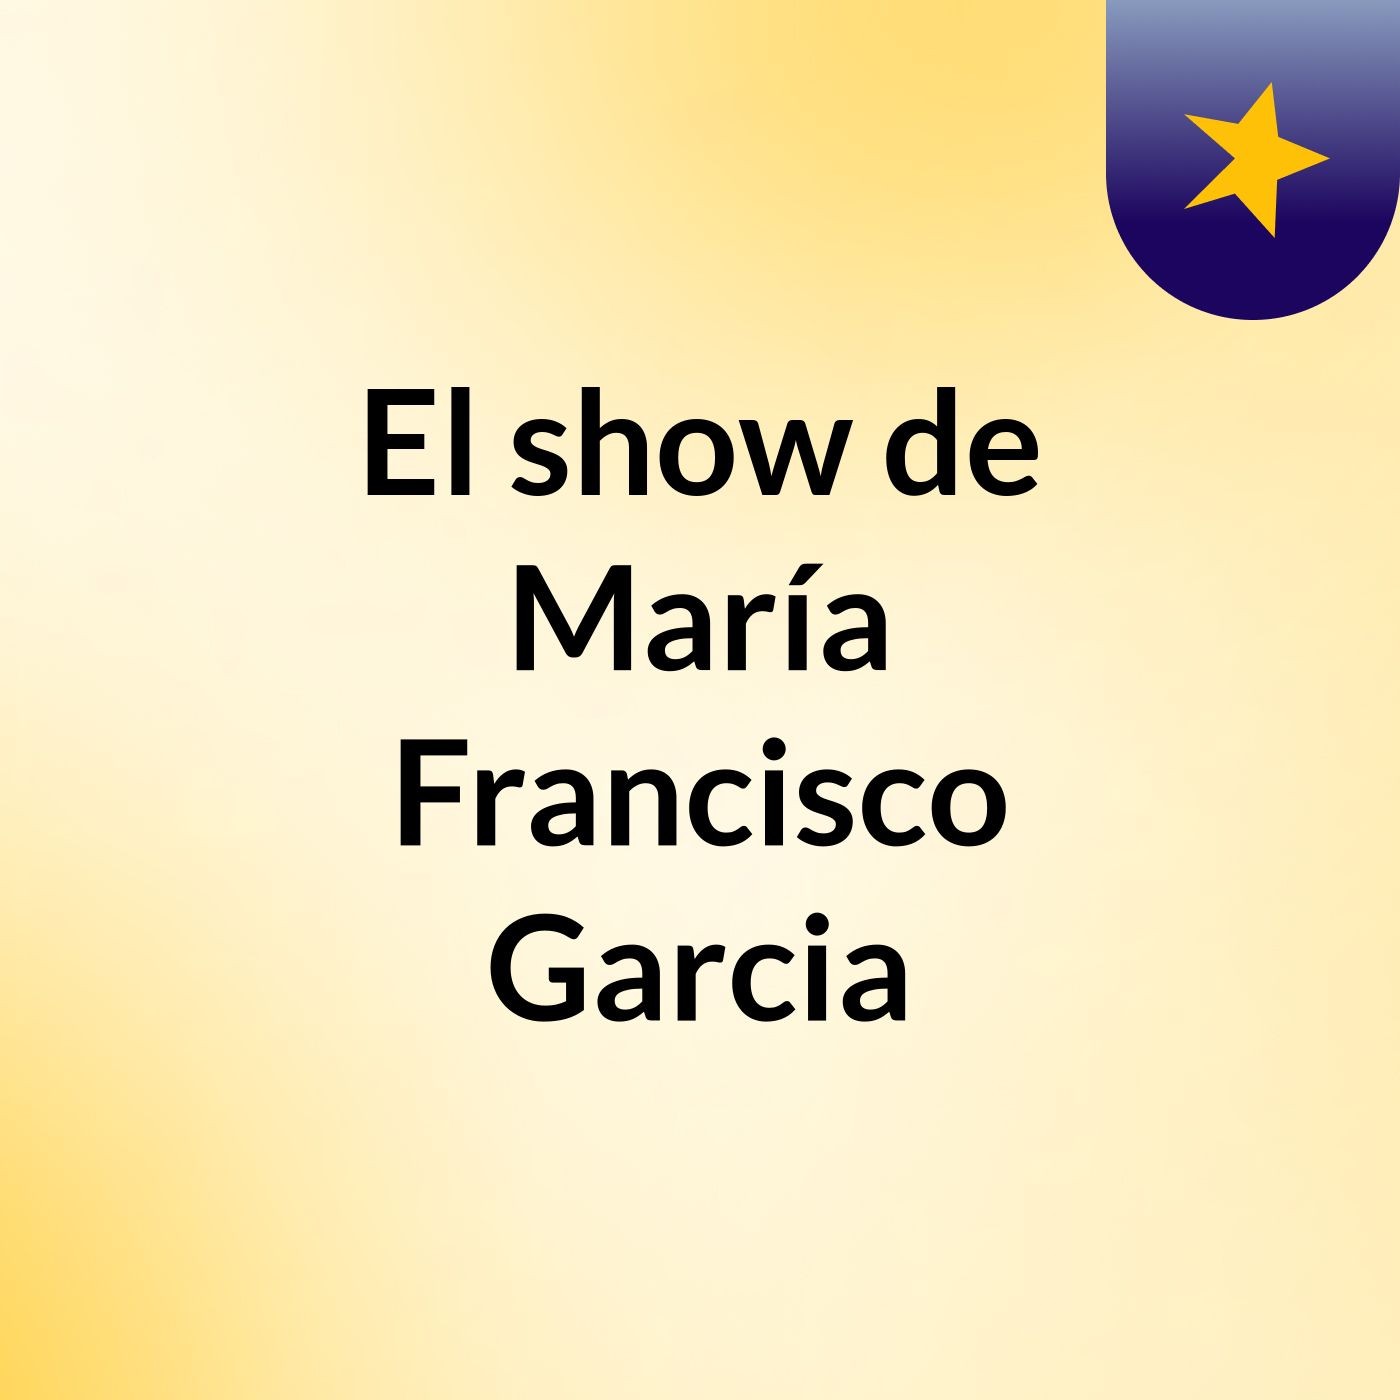 El show de María Francisco Garcia